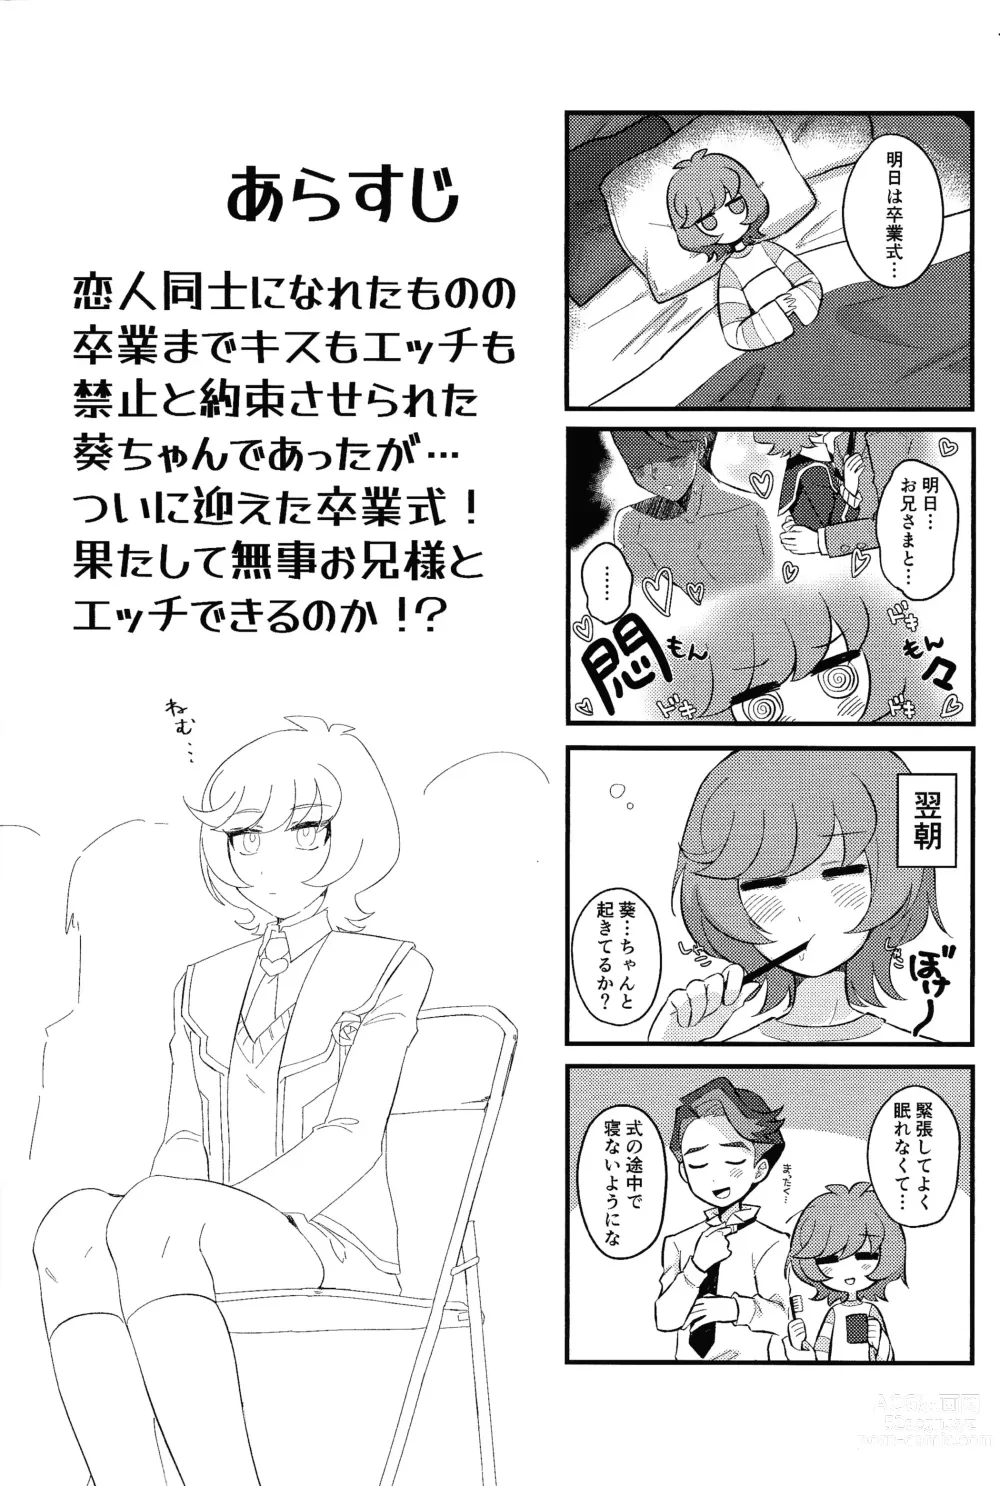 Page 3 of doujinshi Sotsugyo shite kara no o tanoshimi